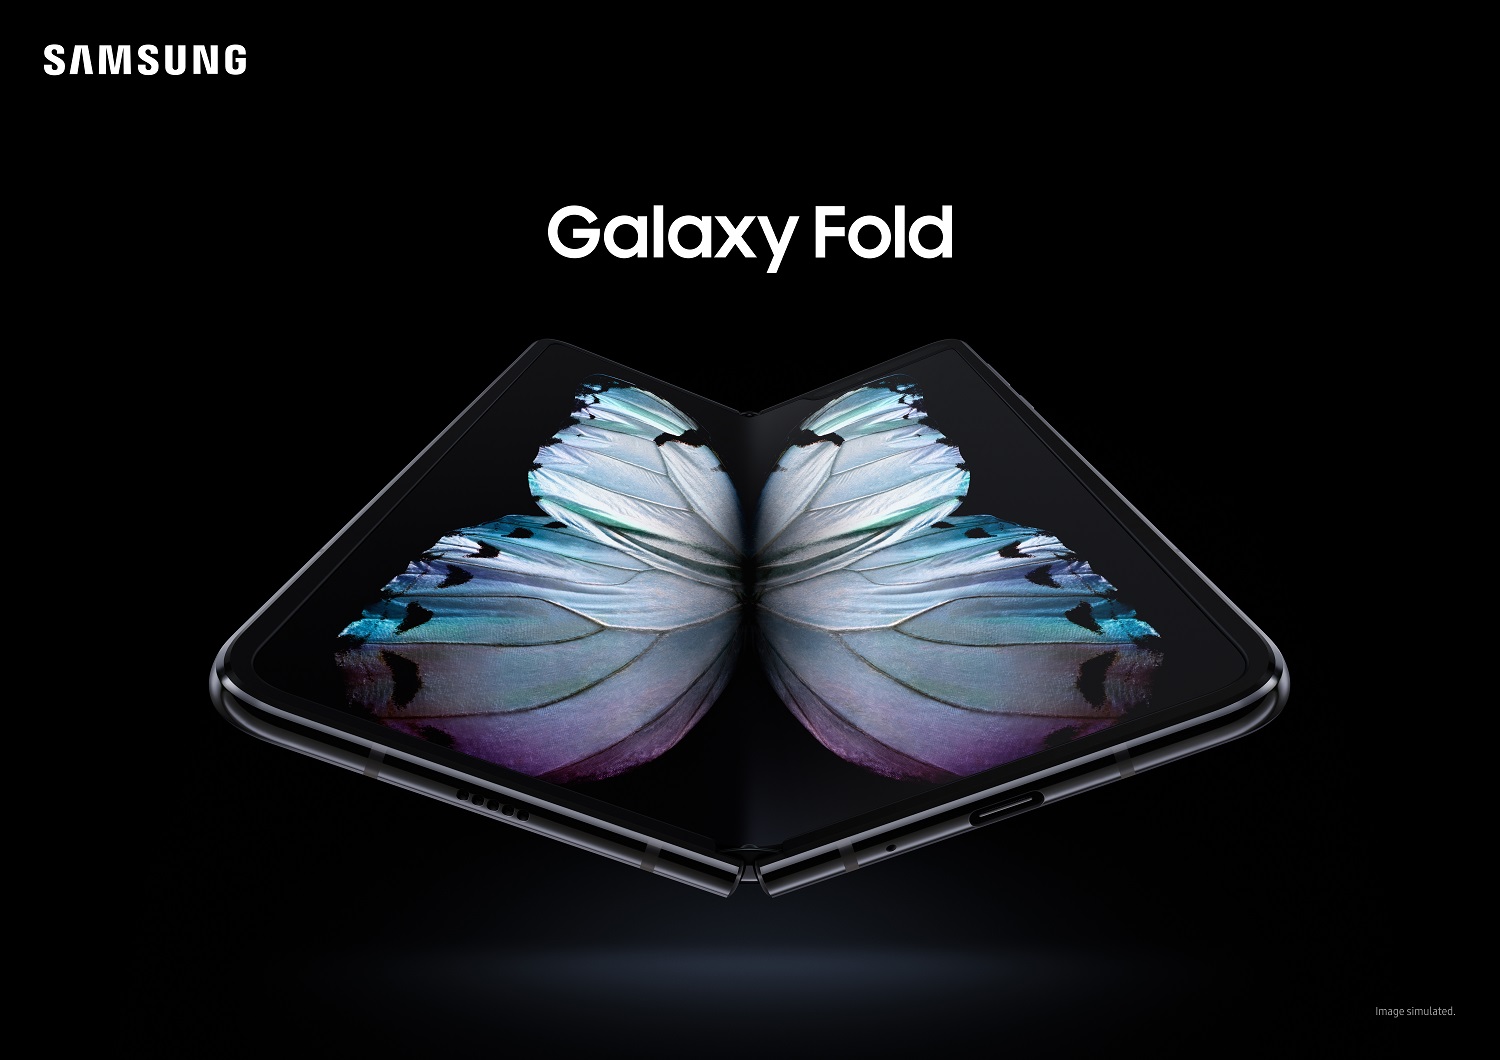 Galaxy Fold sẽ ra mắt tại Việt Nam trong tháng 11 – Khai phá phân khúc điện thoại cao cấp trên 50 triệu